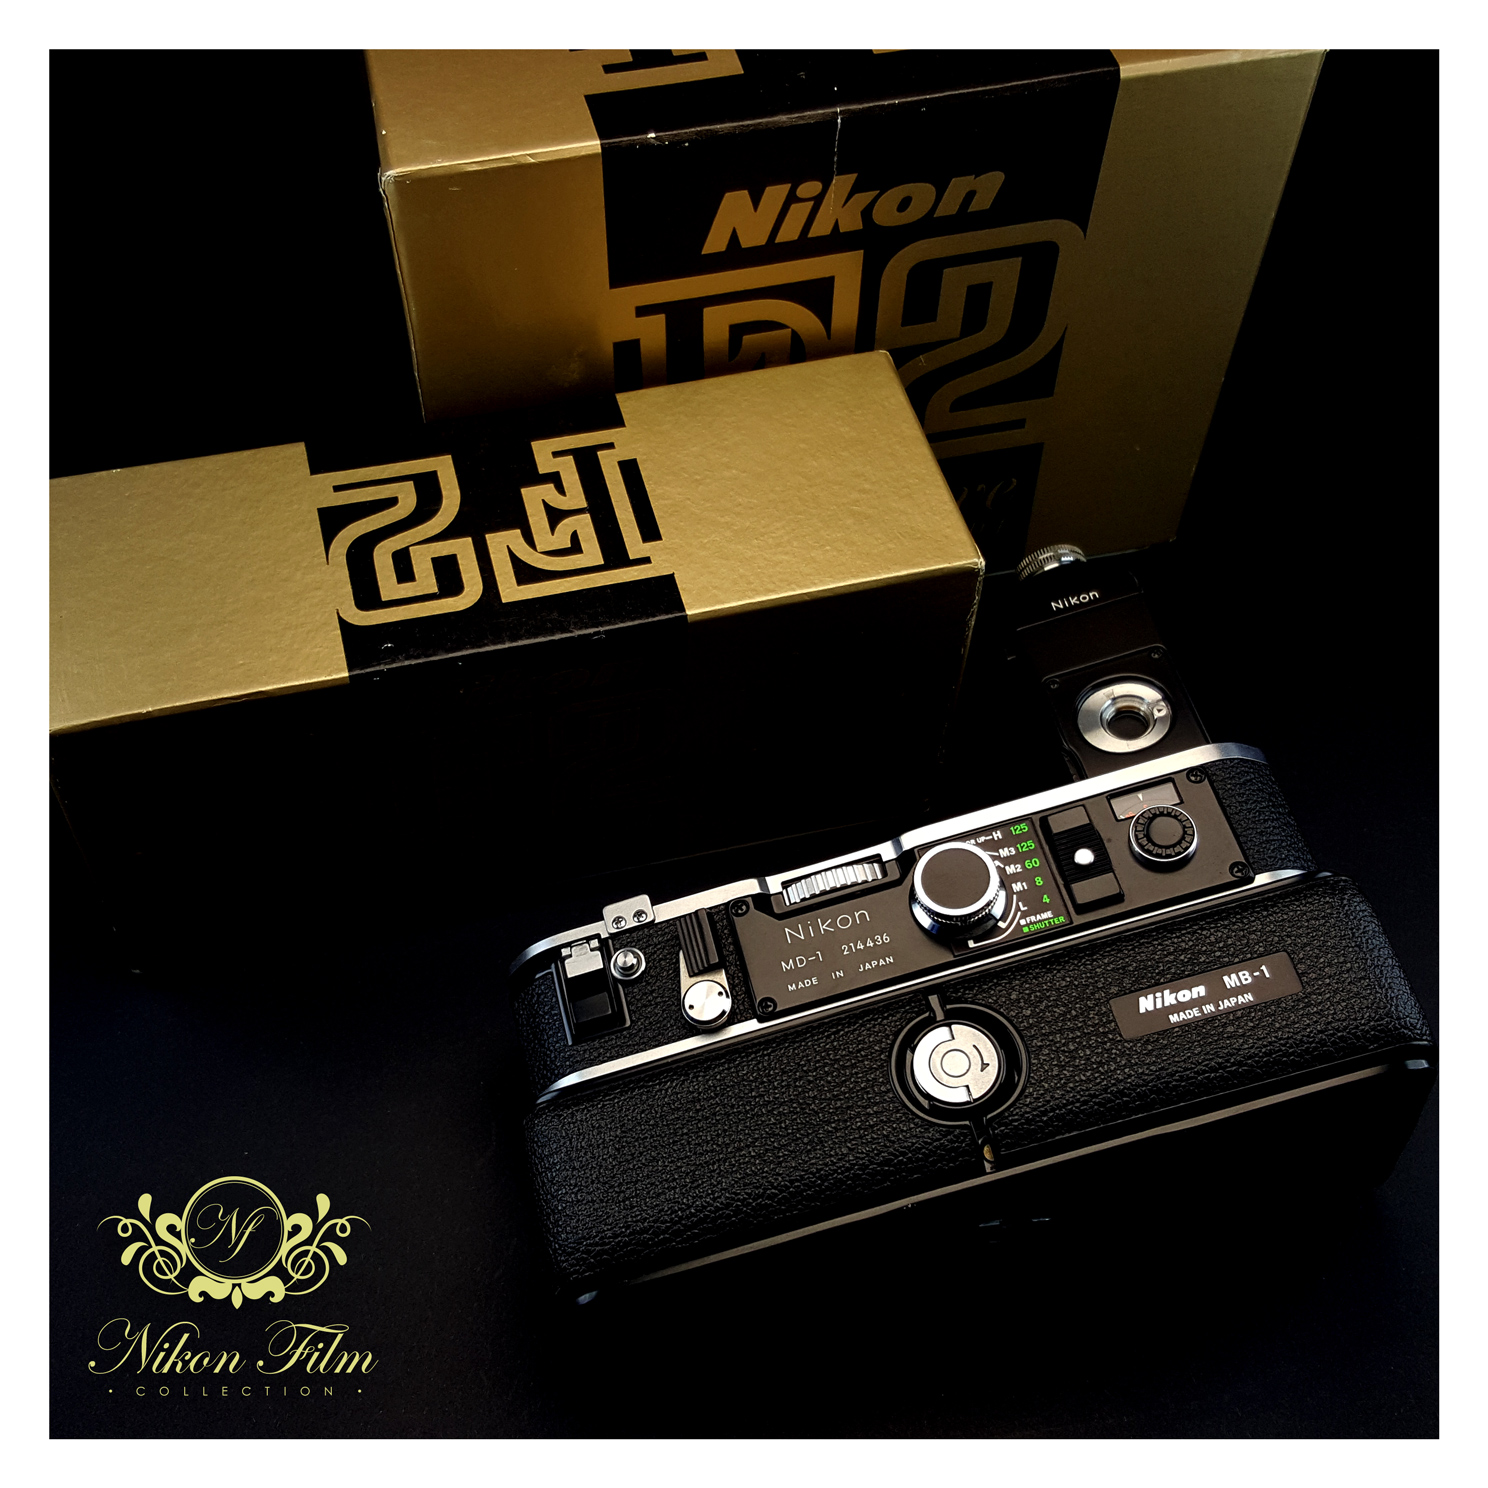 Nikon MD-1 and MB-2 Collection NIKON-FILM